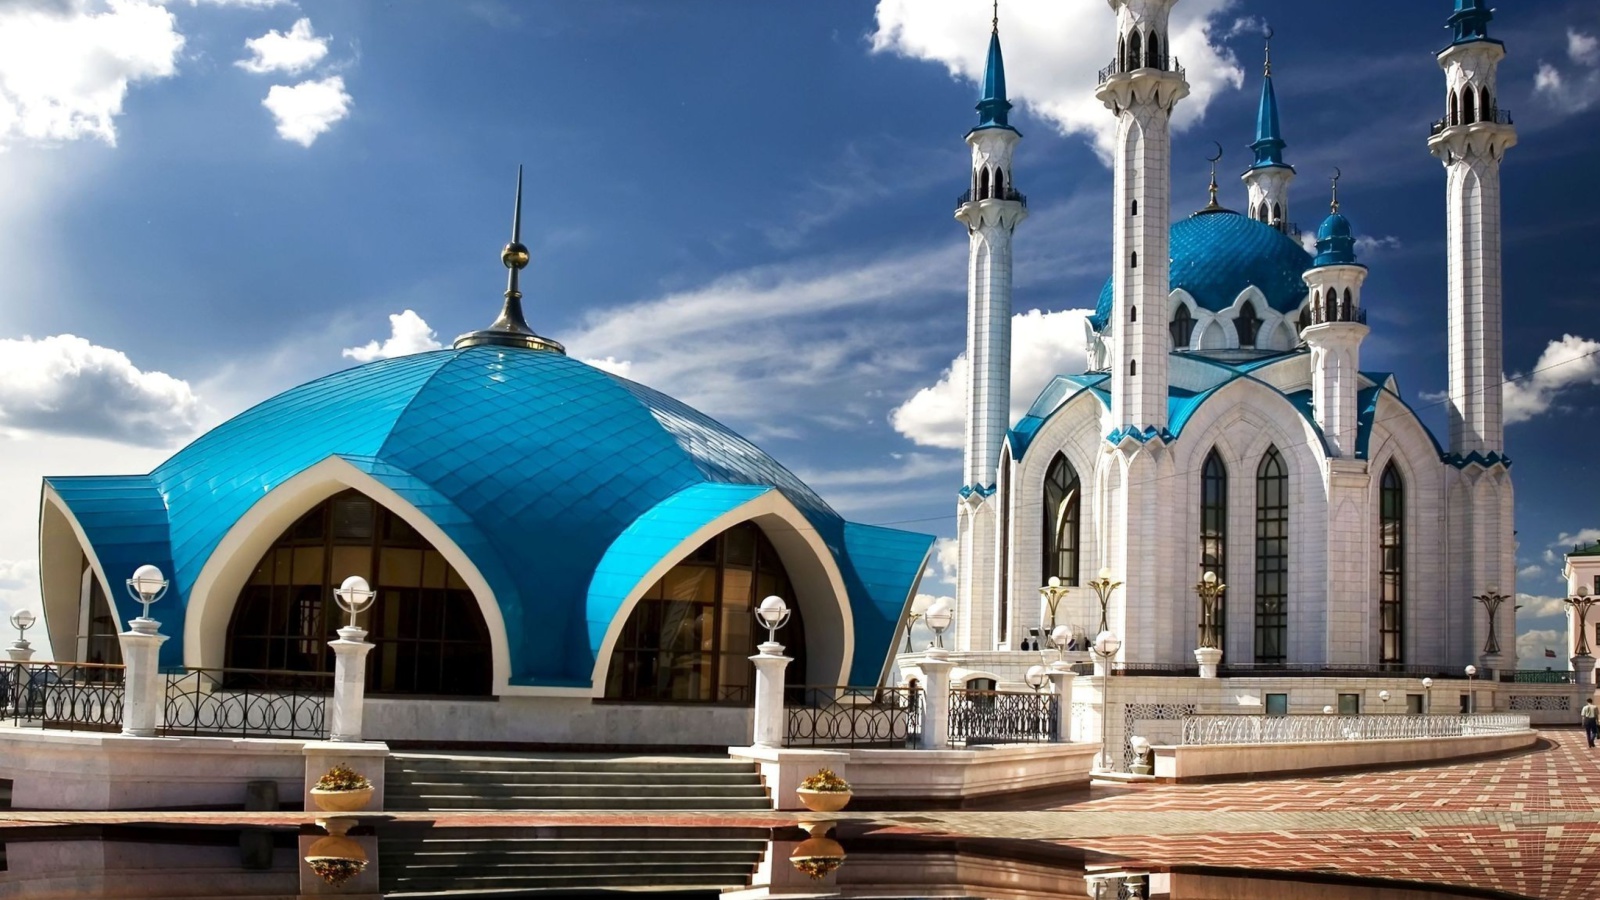 Kul Sharif Mosque in Kazan screenshot #1 1600x900